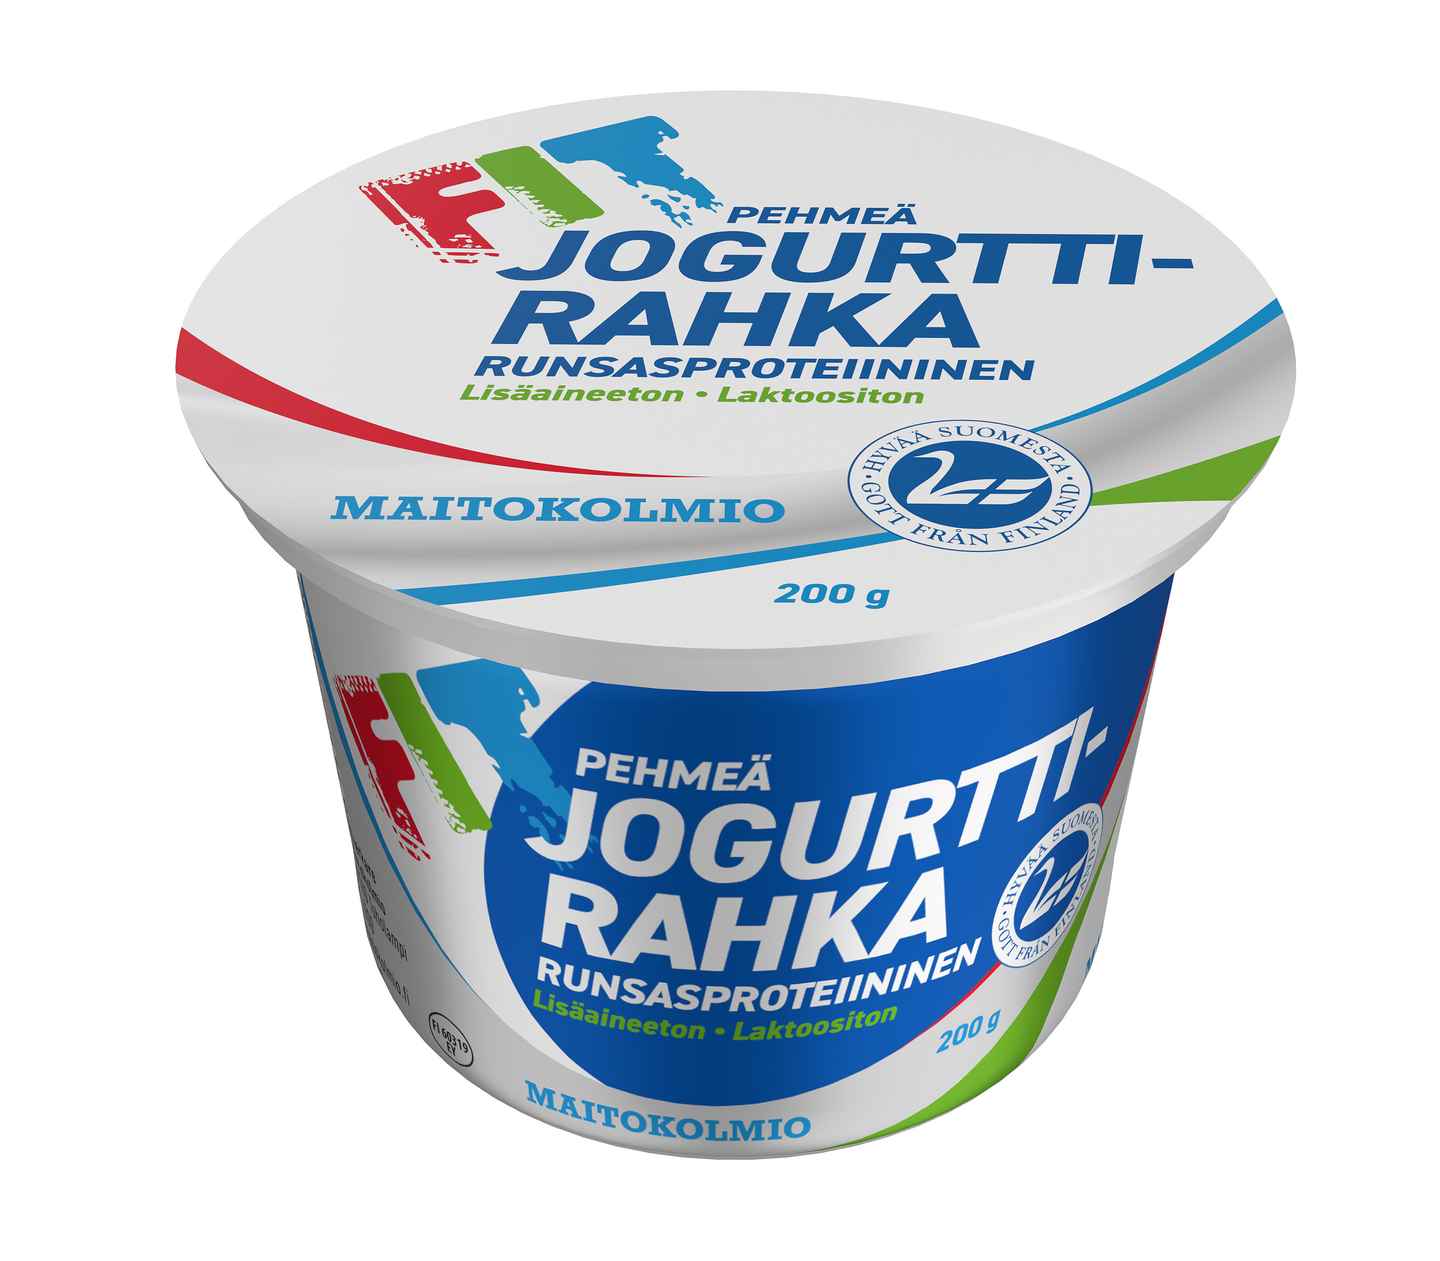 Maitokolmio FIT pehmeä jogurttirahka 200g laktoositon